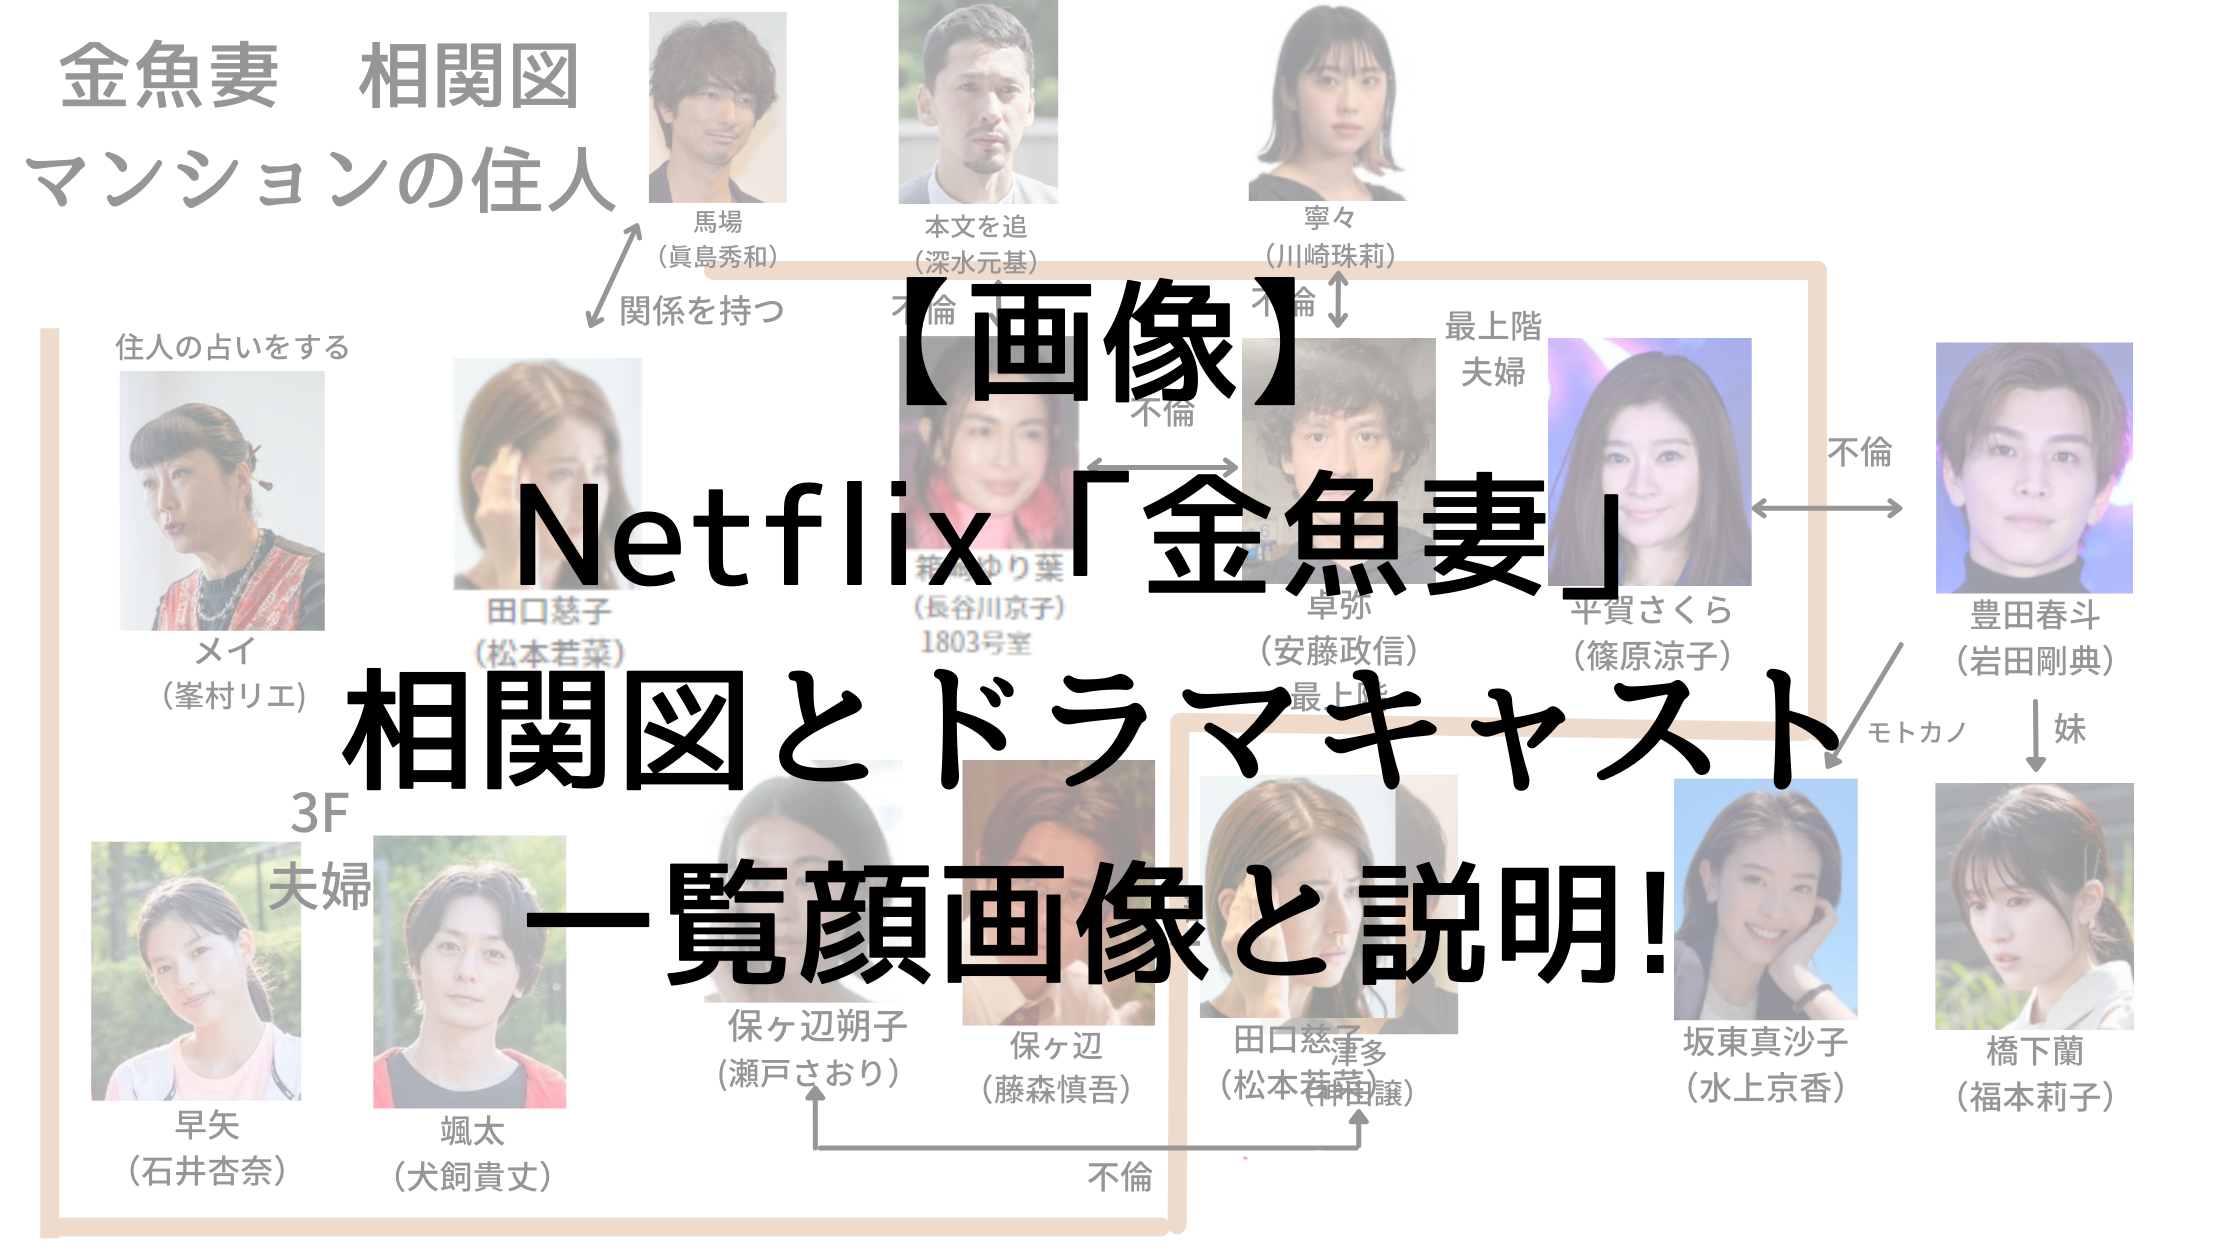 【画像】Netflix「金魚妻」相関図とドラマキャスト一覧顔画像と説明!1